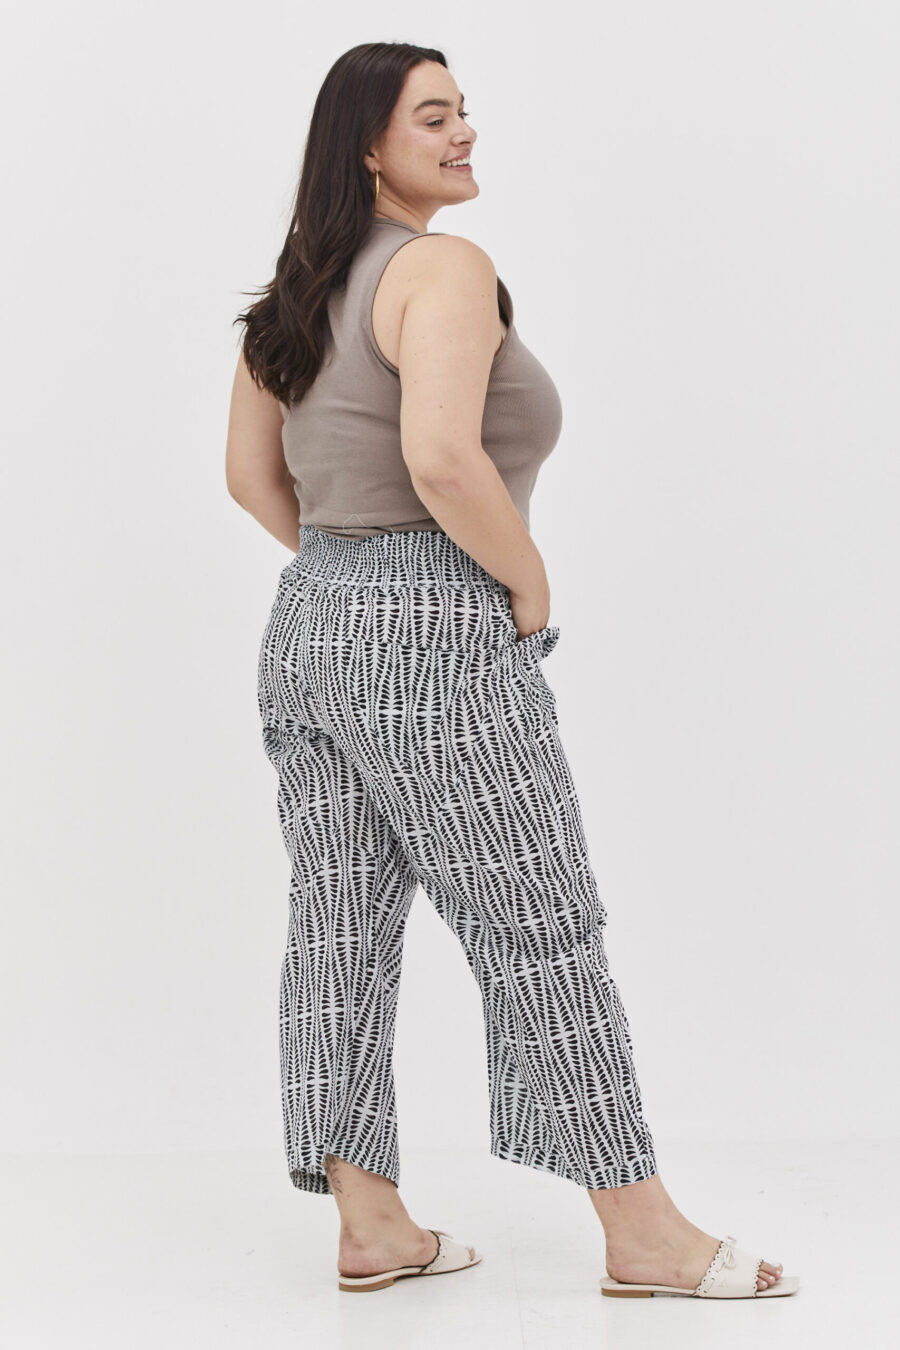 מכנסי הרמוני | מכנסיים מעוצבים ונוחים של קומפורט זון בוטיק - הדפס אגם לבן, מכנסיים לבנים עם הדפס גיאומטרי בצבע שחור.